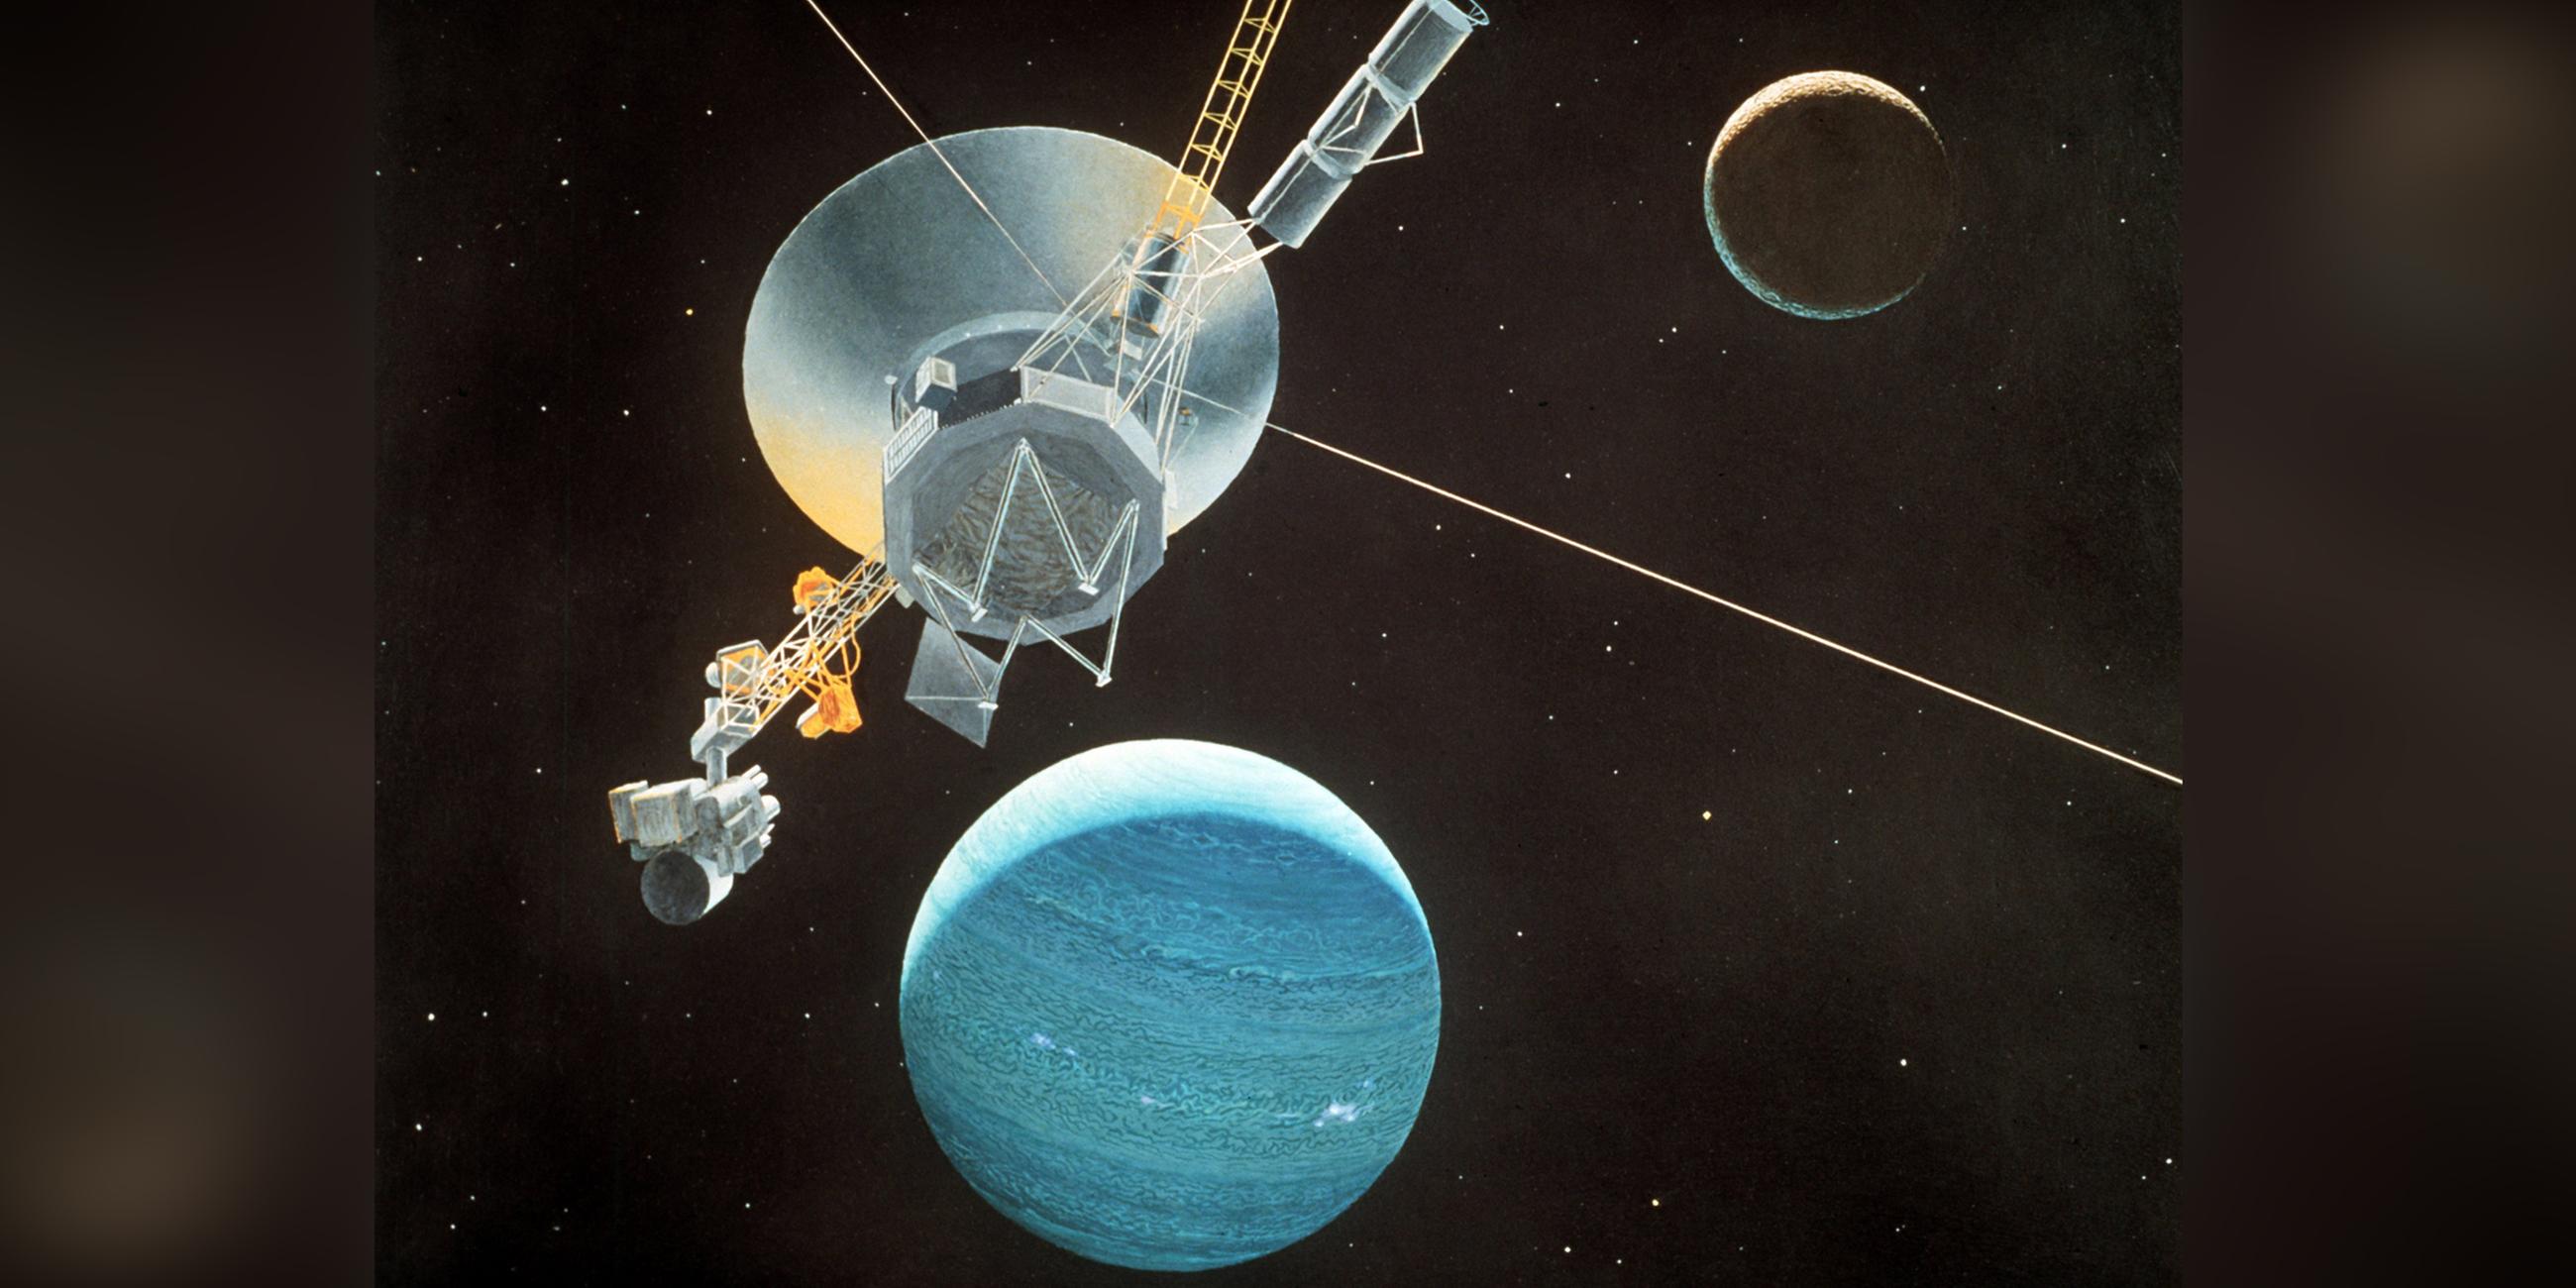 Archiv: Grafische Darstellung der amerikanischen Raumsonde Voyager 2 mit dem Planeten Neptun und seinem Mond Triton, herausgegeben im August 1981. 